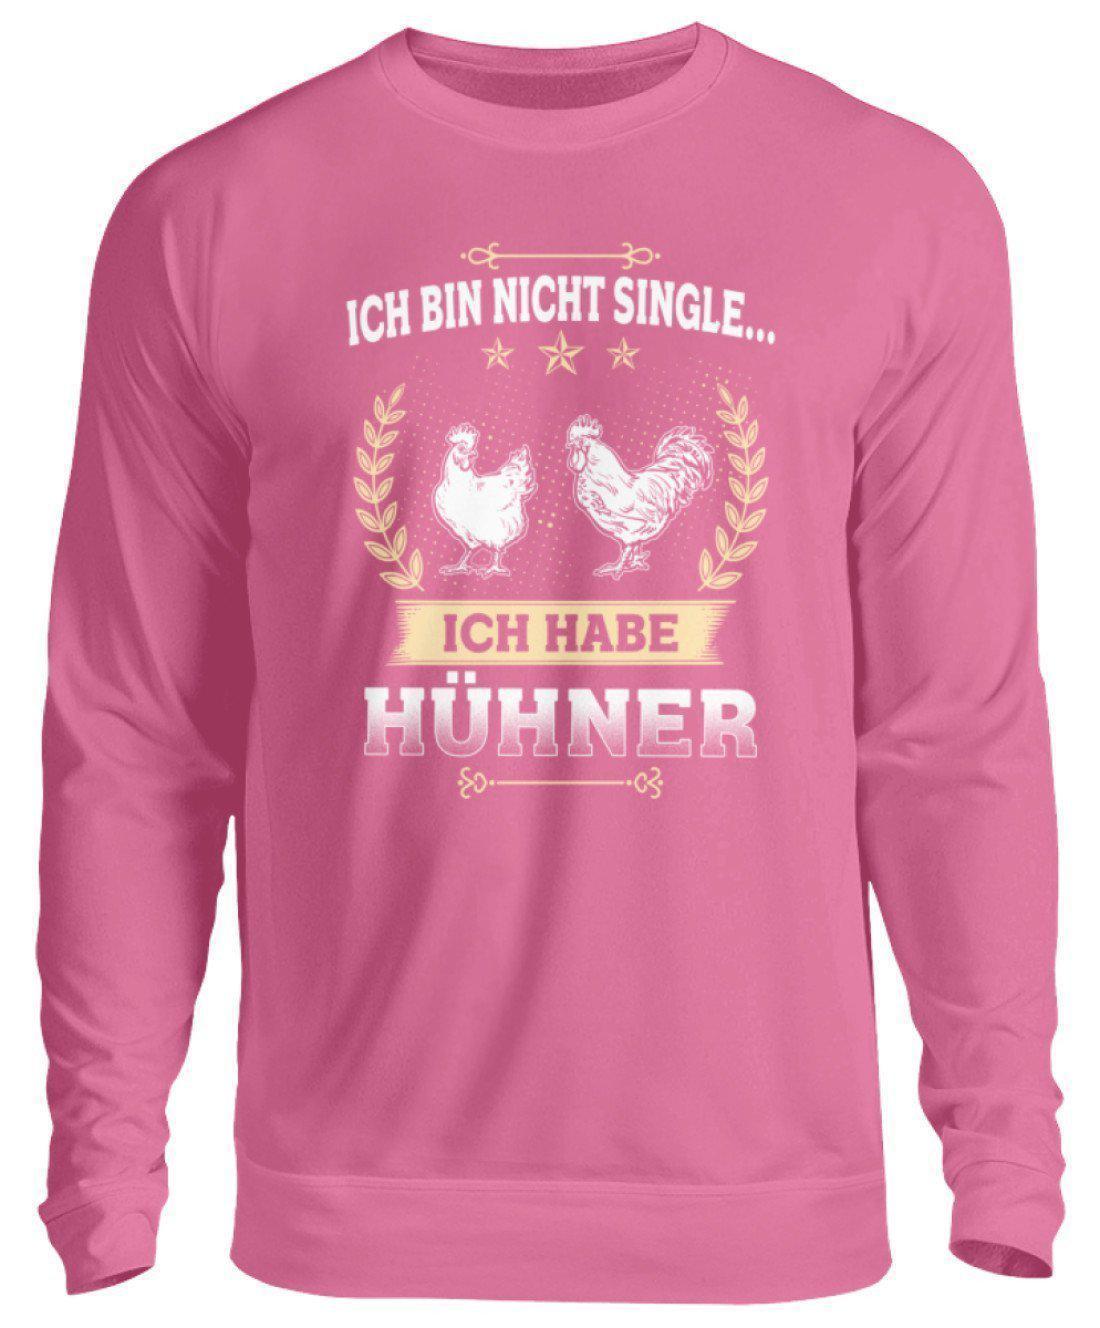 Ich bin nicht single Hühner · Unisex Sweatshirt Pullover-Unisex Sweatshirt-Candyfloss Pink-S-Agrarstarz